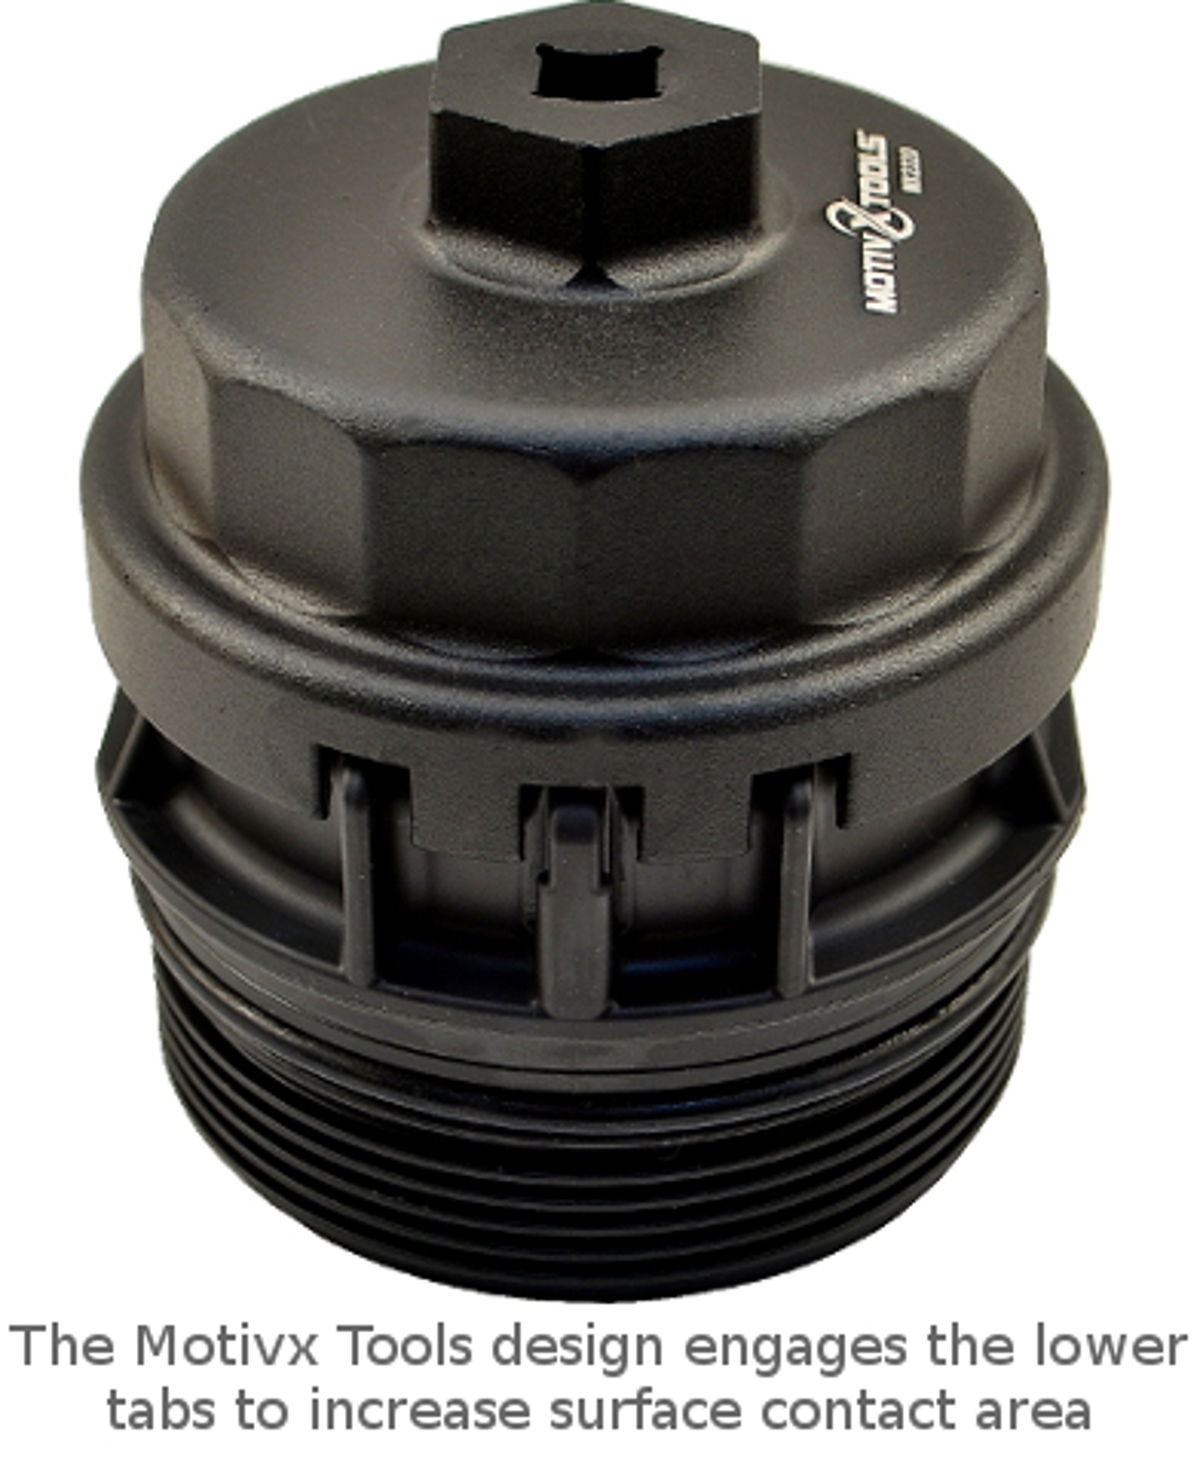 64mm Oil Filter Cap Wrench Socket Remover Housing Tool For Toyota RAV4 Lexus